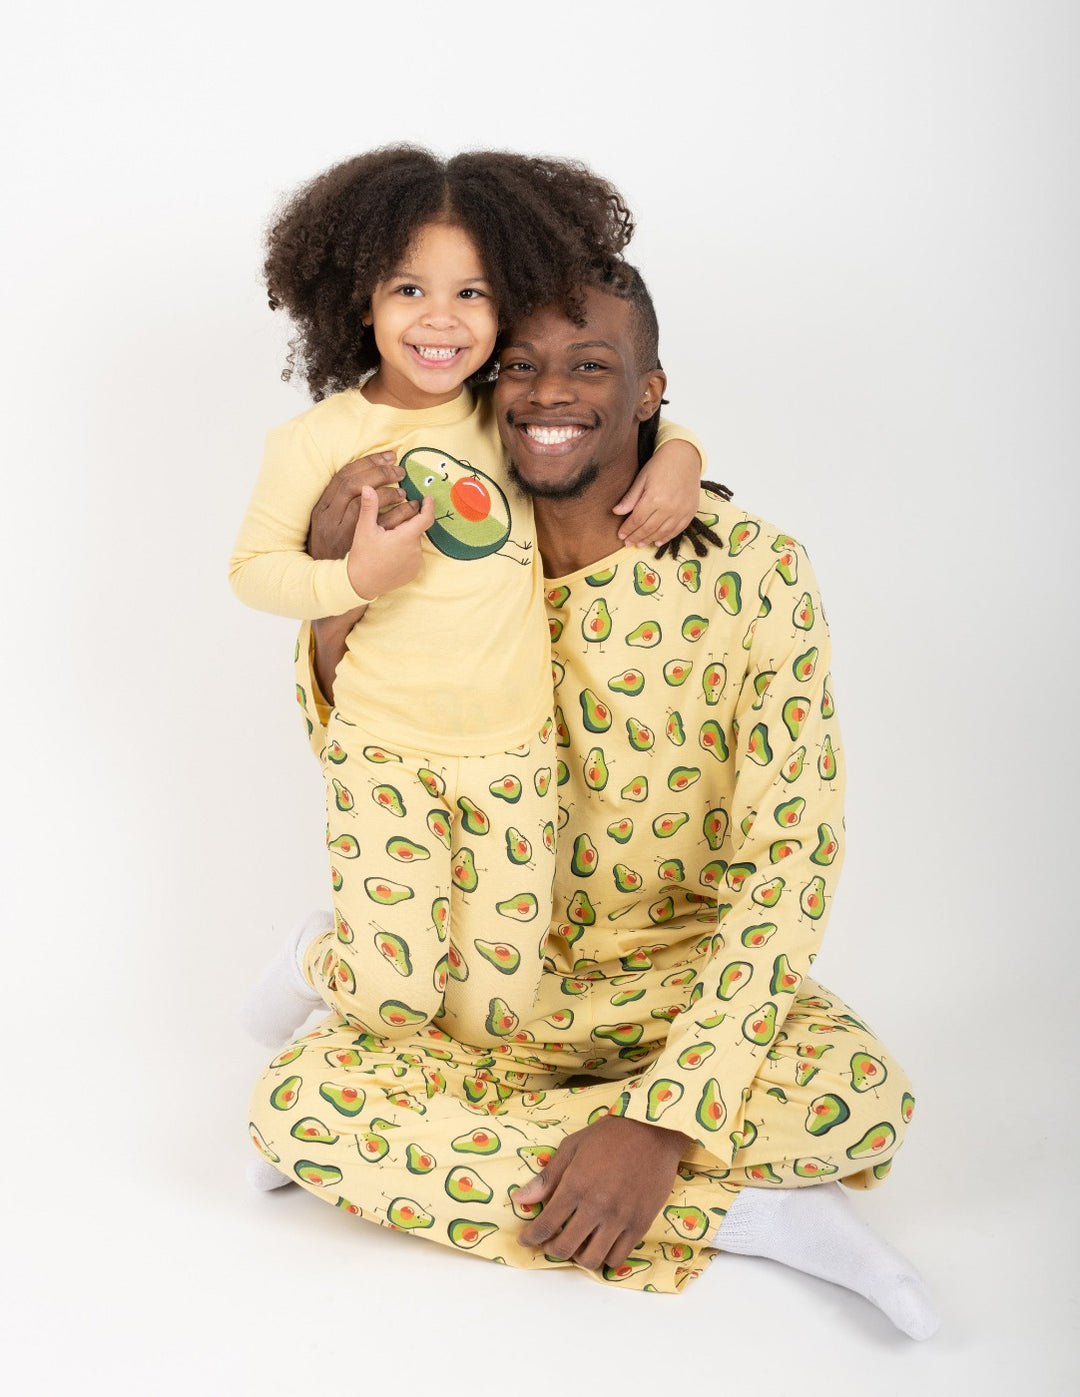 yellow avocado print kids cotton pajamas